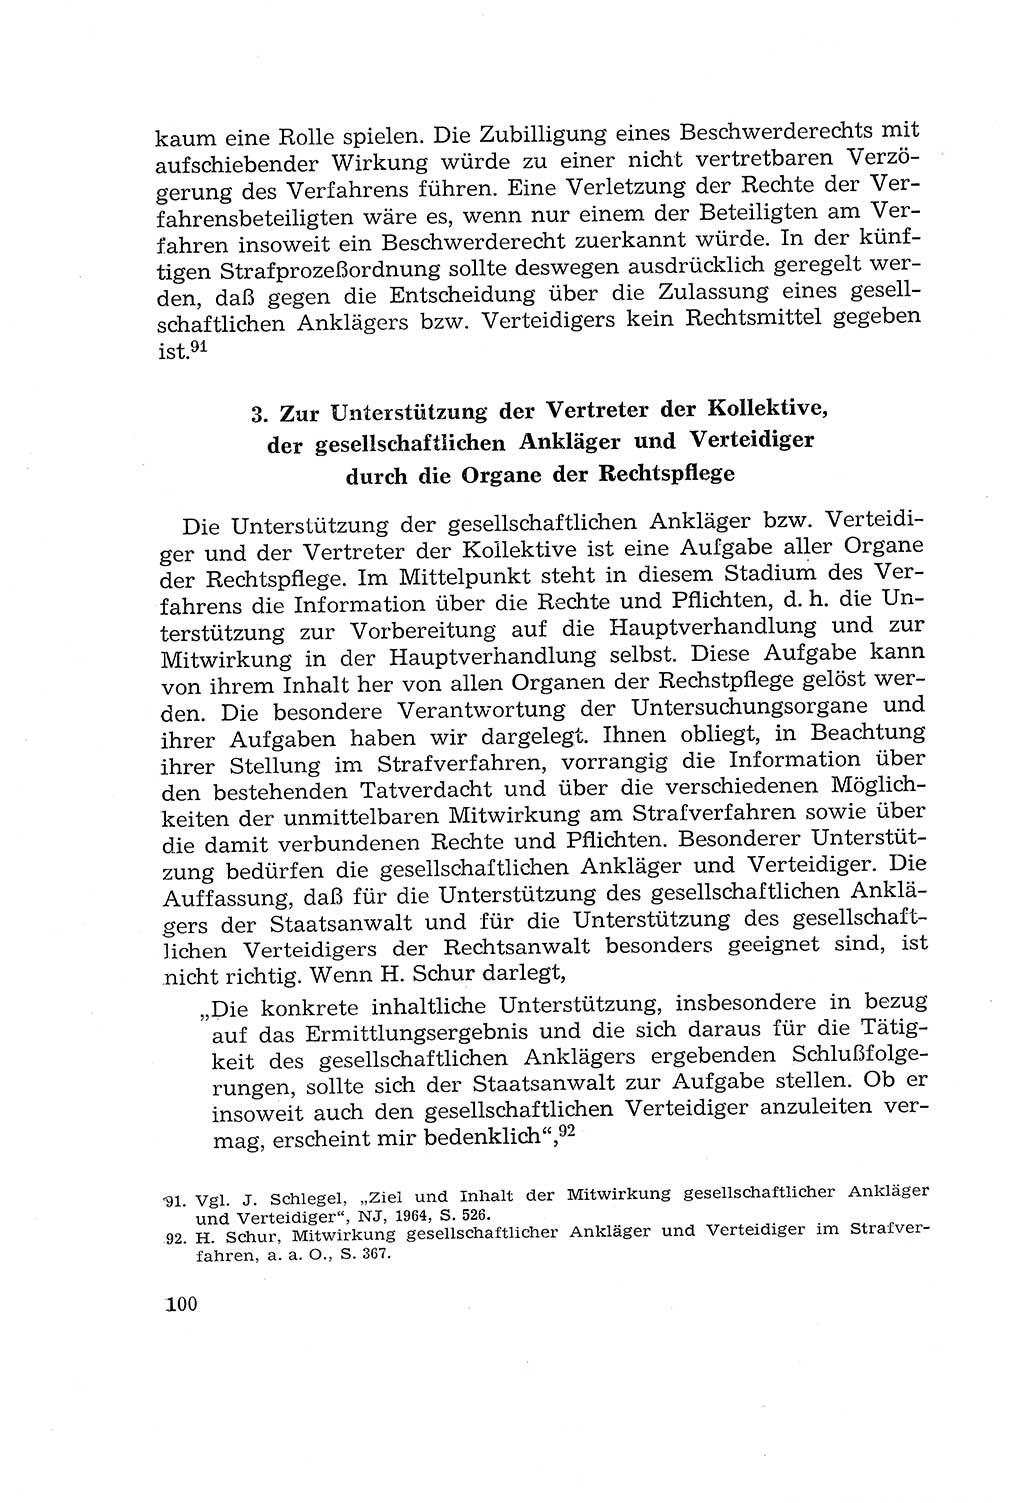 Die Mitwirkung der Werktätigen am Strafverfahren [Deutsche Demokratische Republik (DDR)] 1966, Seite 100 (Mitw. Str.-Verf. DDR 1966, S. 100)